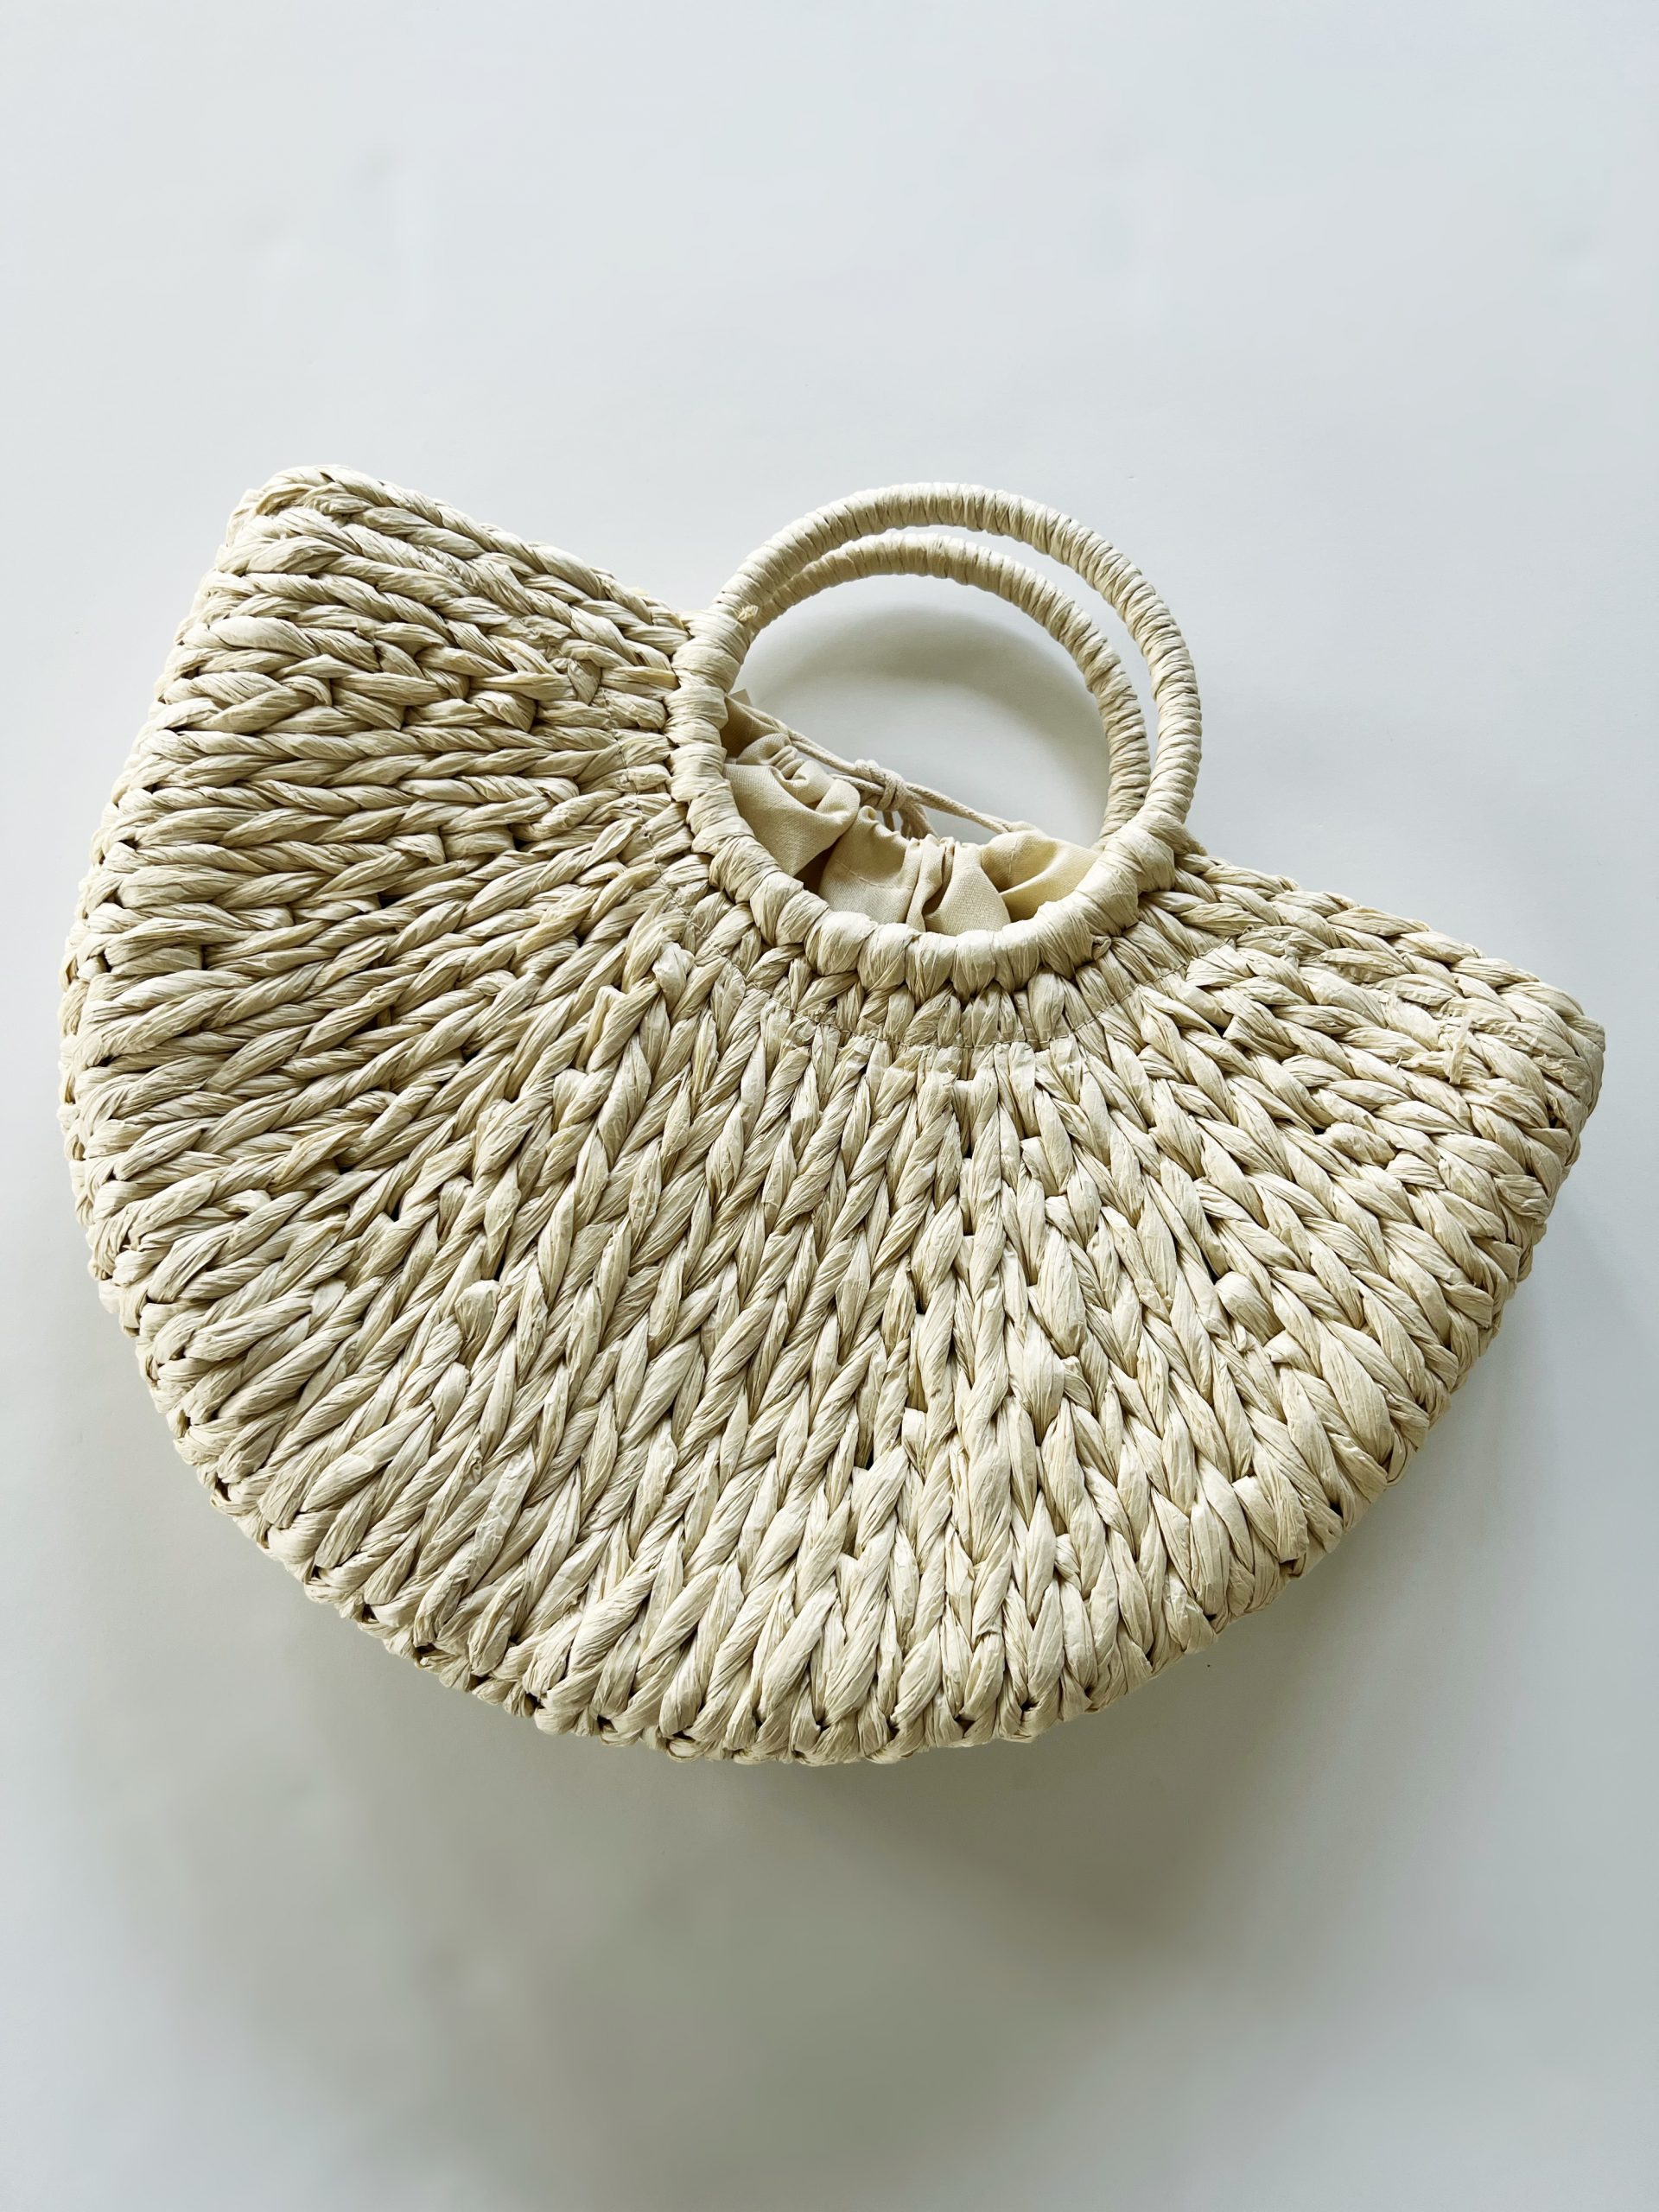 Woven straw handbag - Kenz Boutique